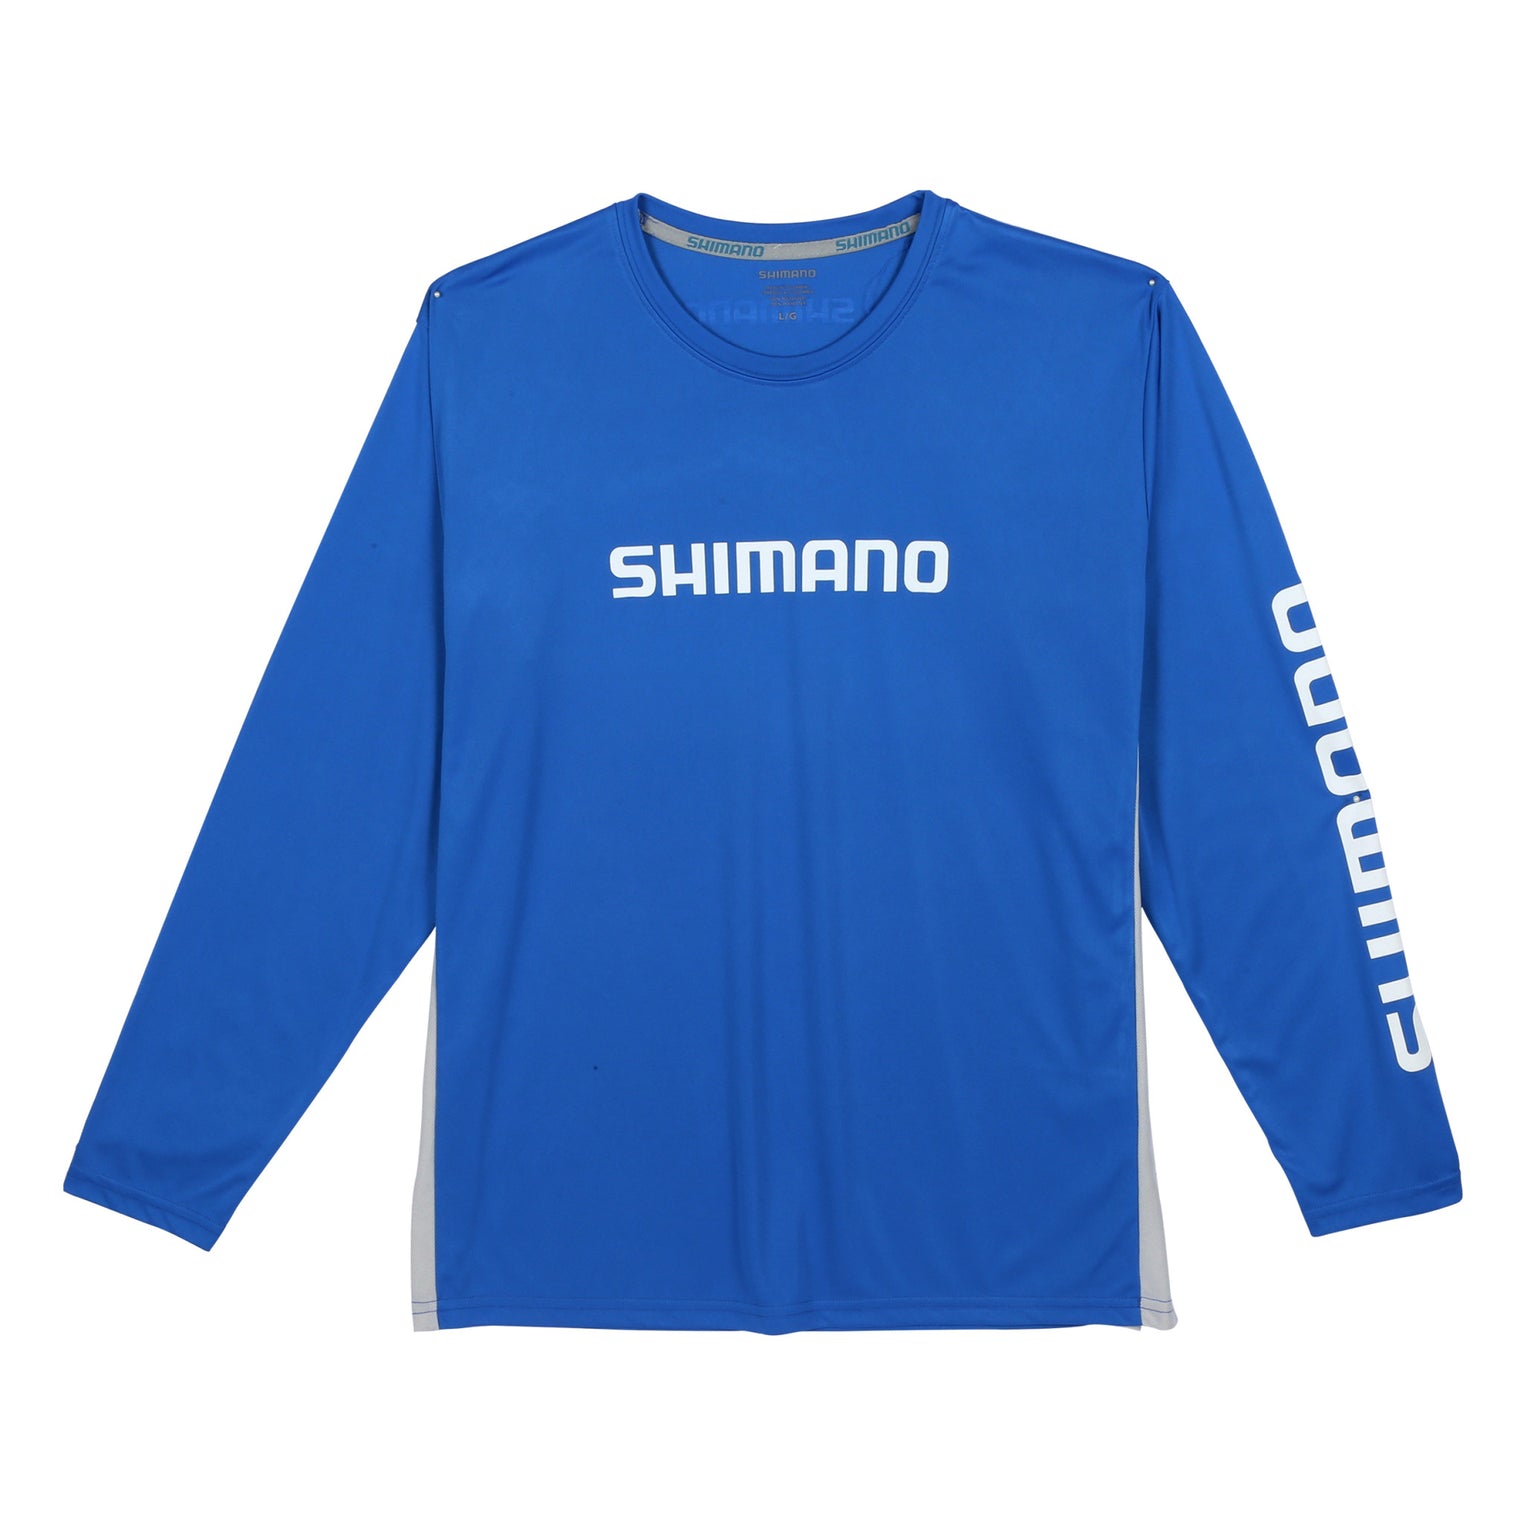 Shimano Short Sleeve Cotton Fishing Gear T-Shirt